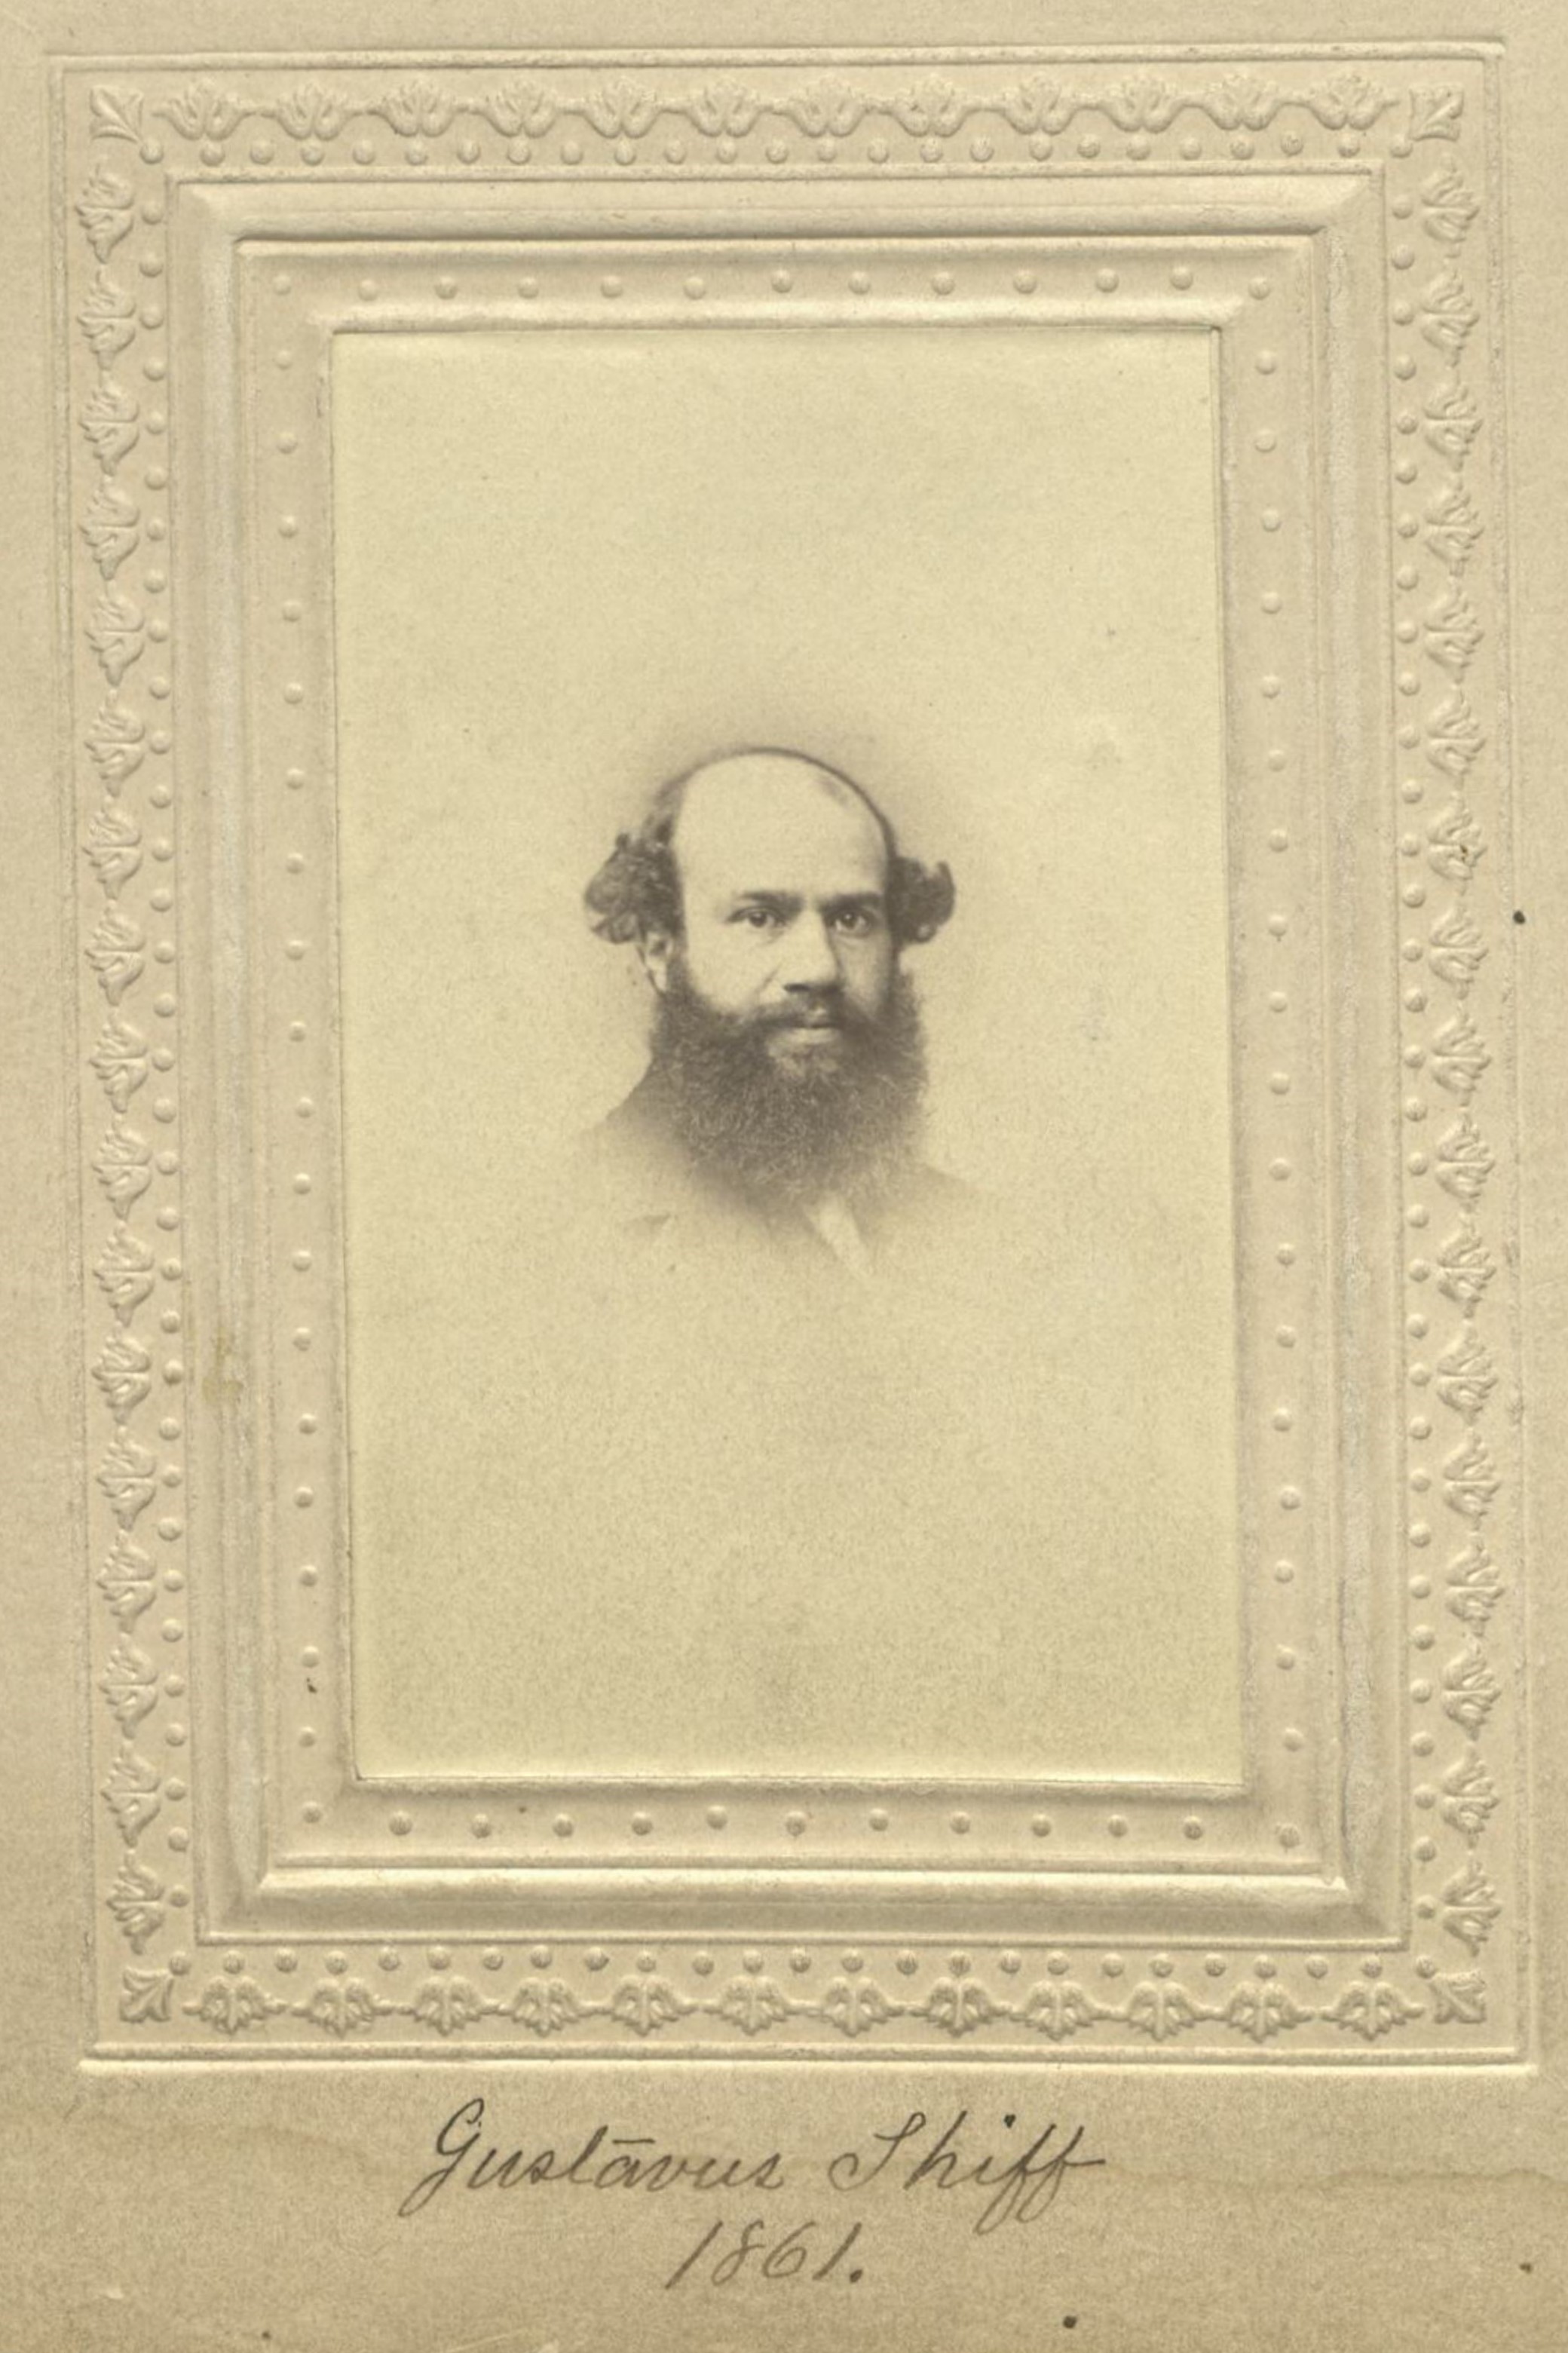 Member portrait of Gustav Shiff